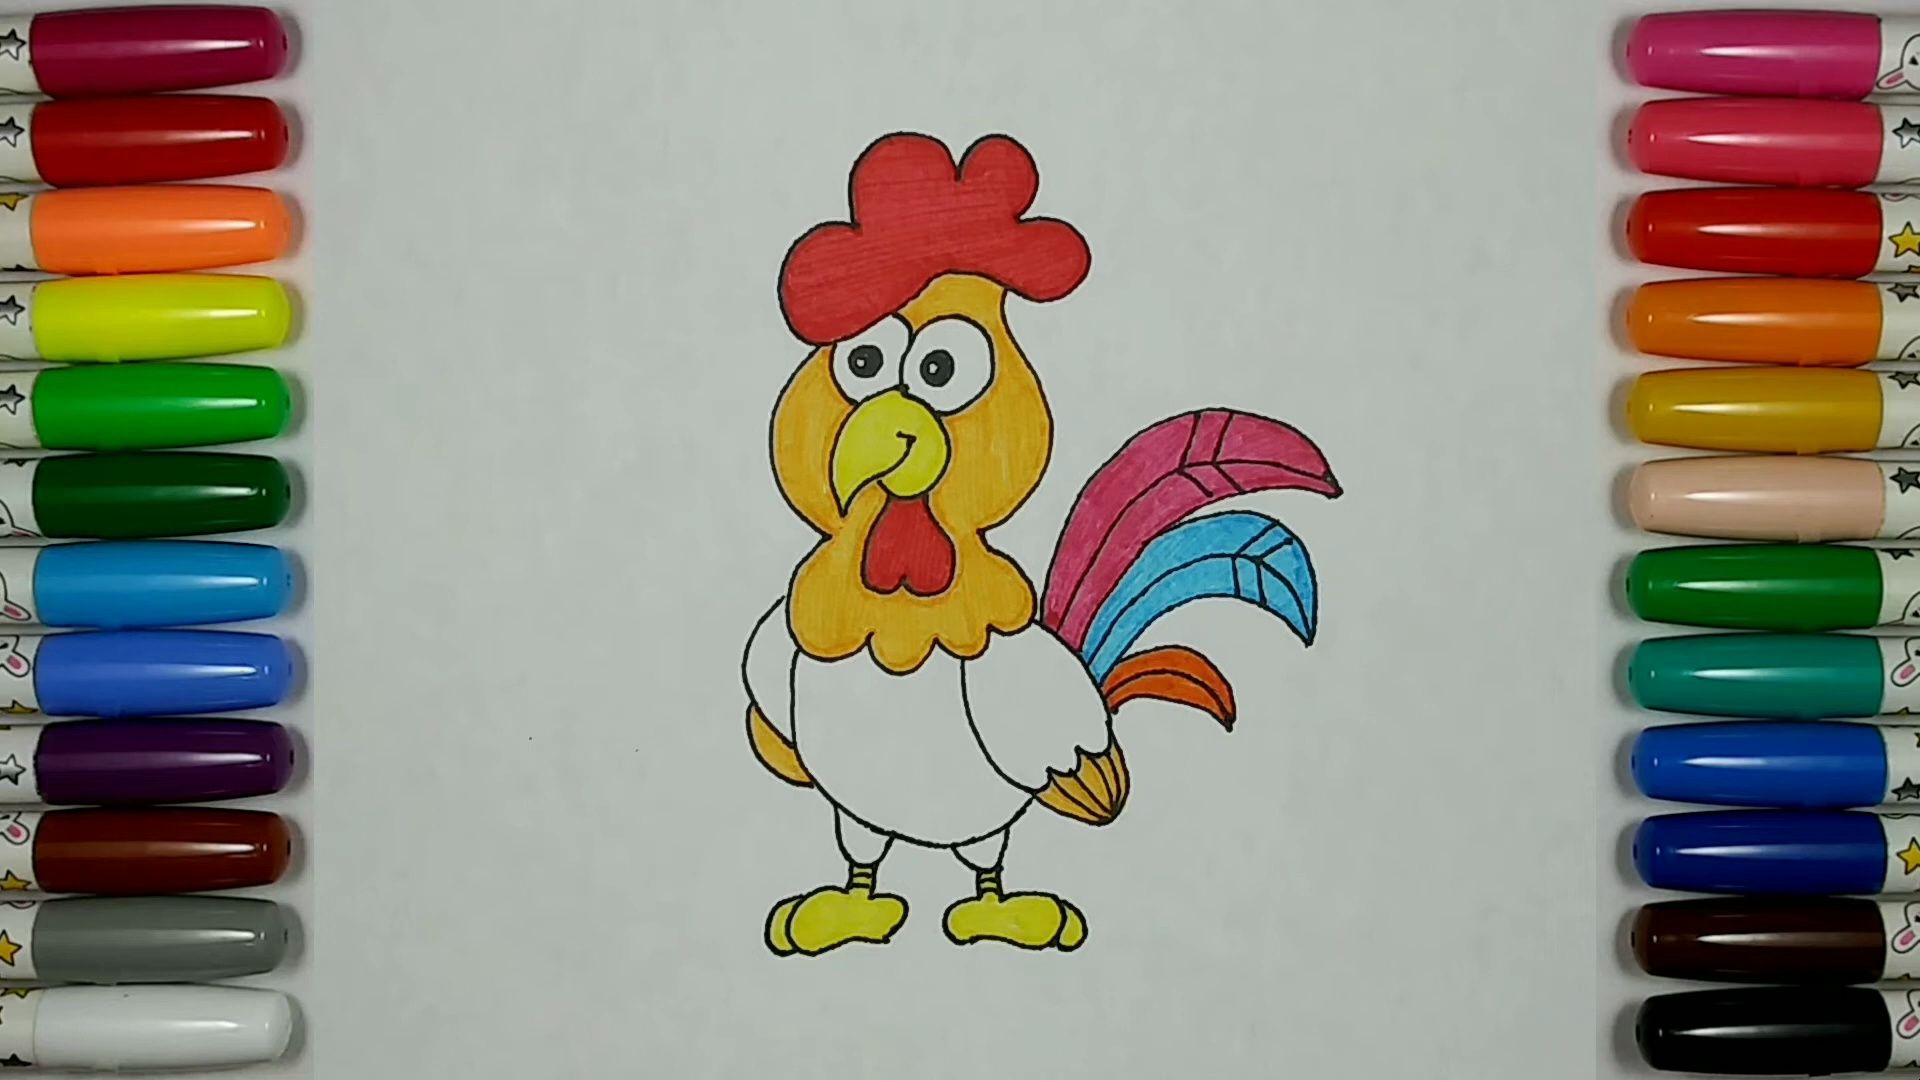 简笔画动物鸡简单画法图片